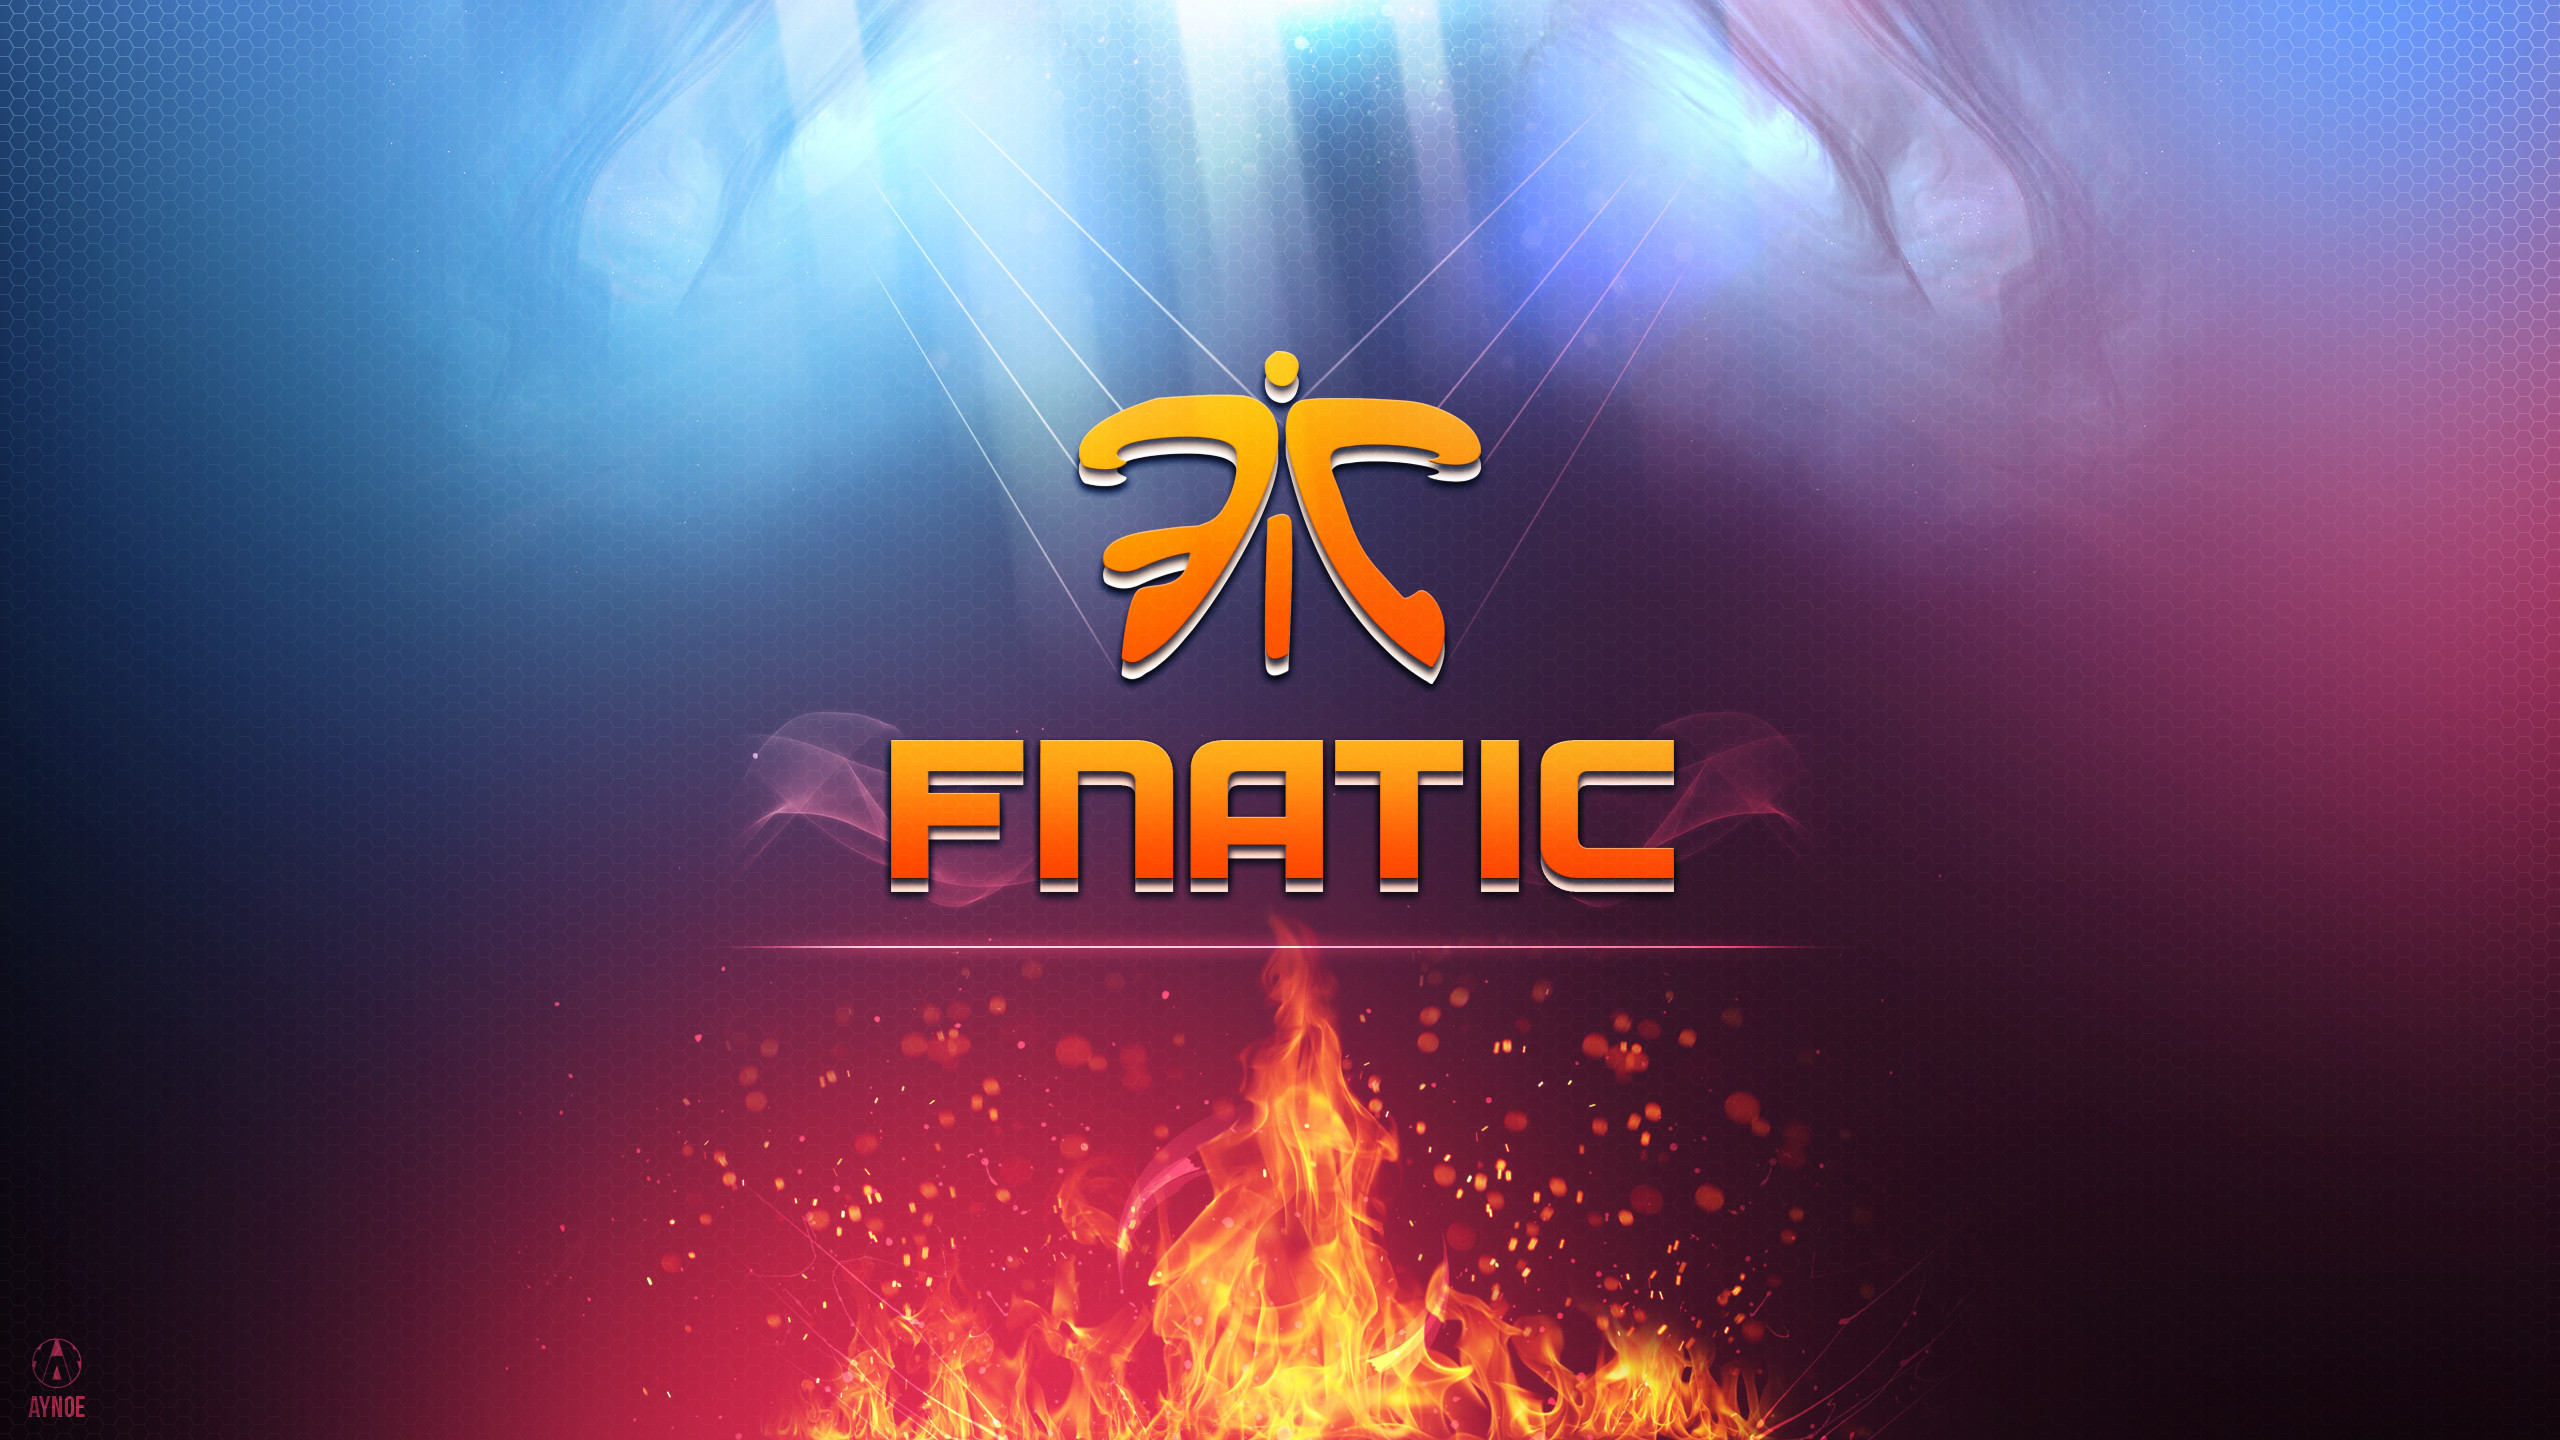 2560x1440 ... Fnatic 2.0 Wallpaper Logo - League of Legends by Aynoe